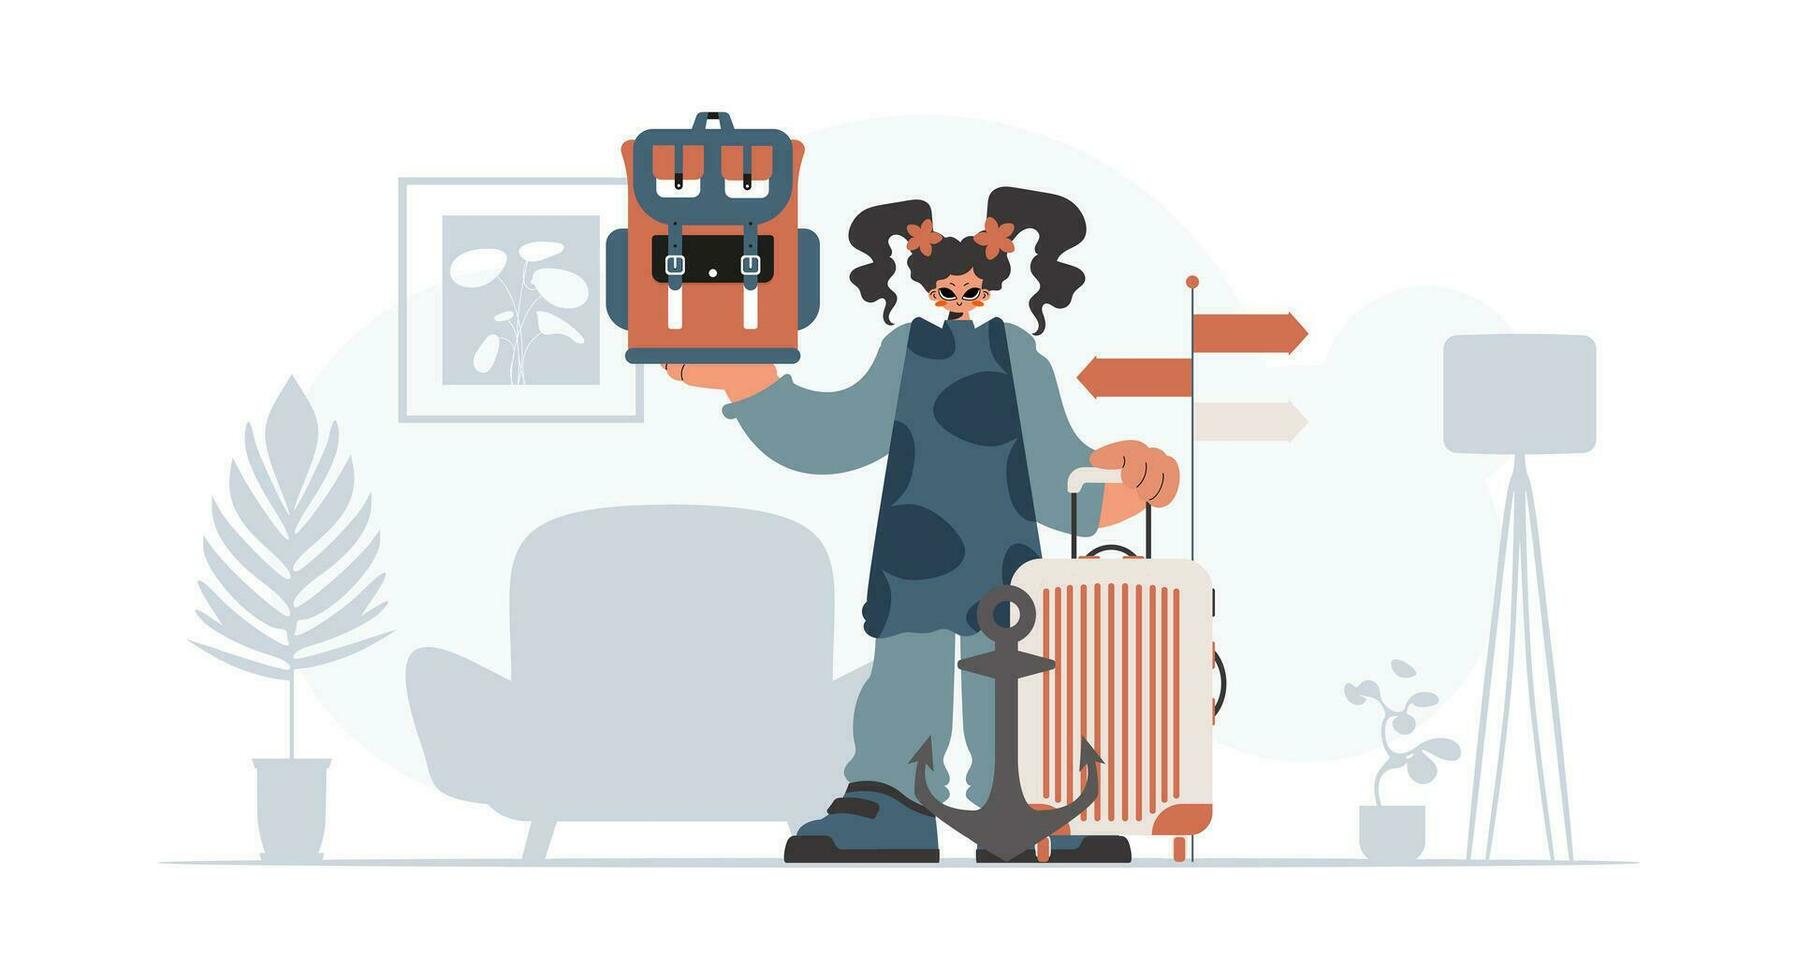 das jugendlich Frau ist halten ein Reise Rucksack und ein Sack. das Konzept von sich ausruhen und Reise. modisch Stil, Vektor Illustration